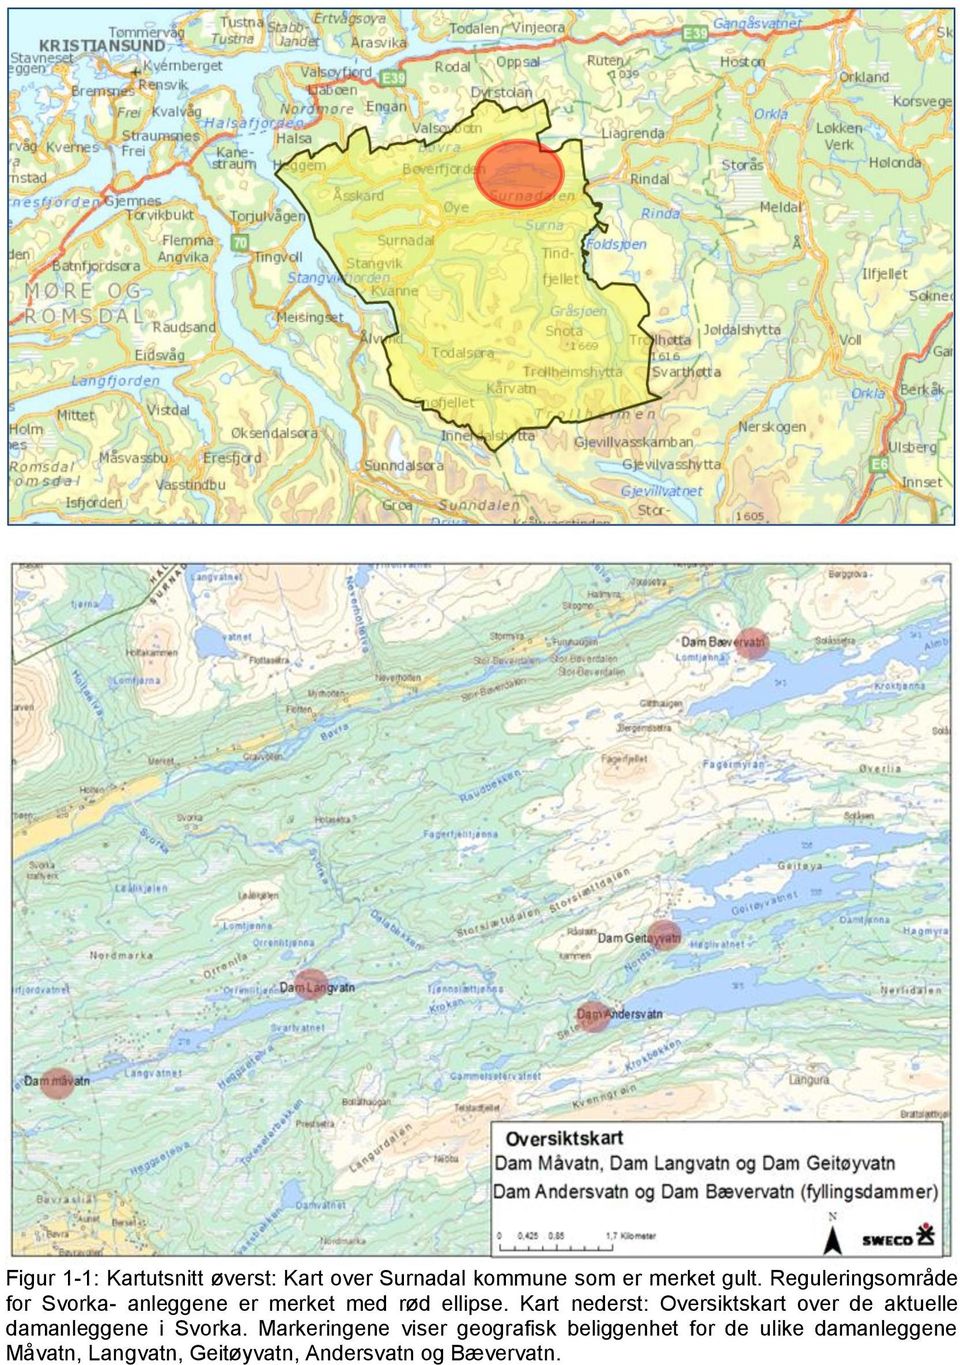 Kart nederst: Oversiktskart over de aktuelle damanleggene i Svorka.